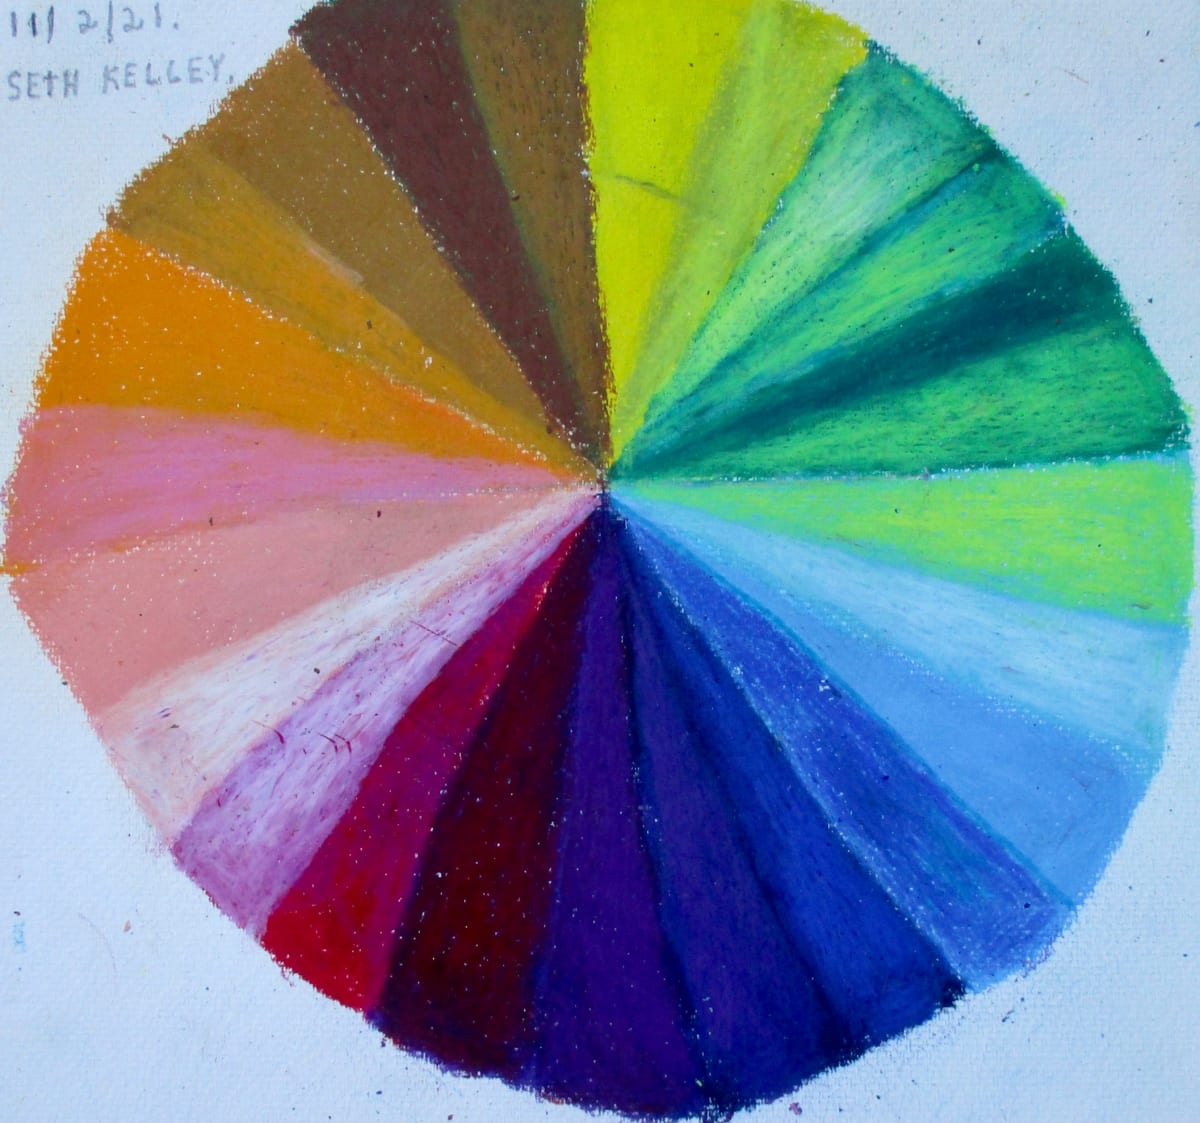 Color Spectrum by Seth Kelley 